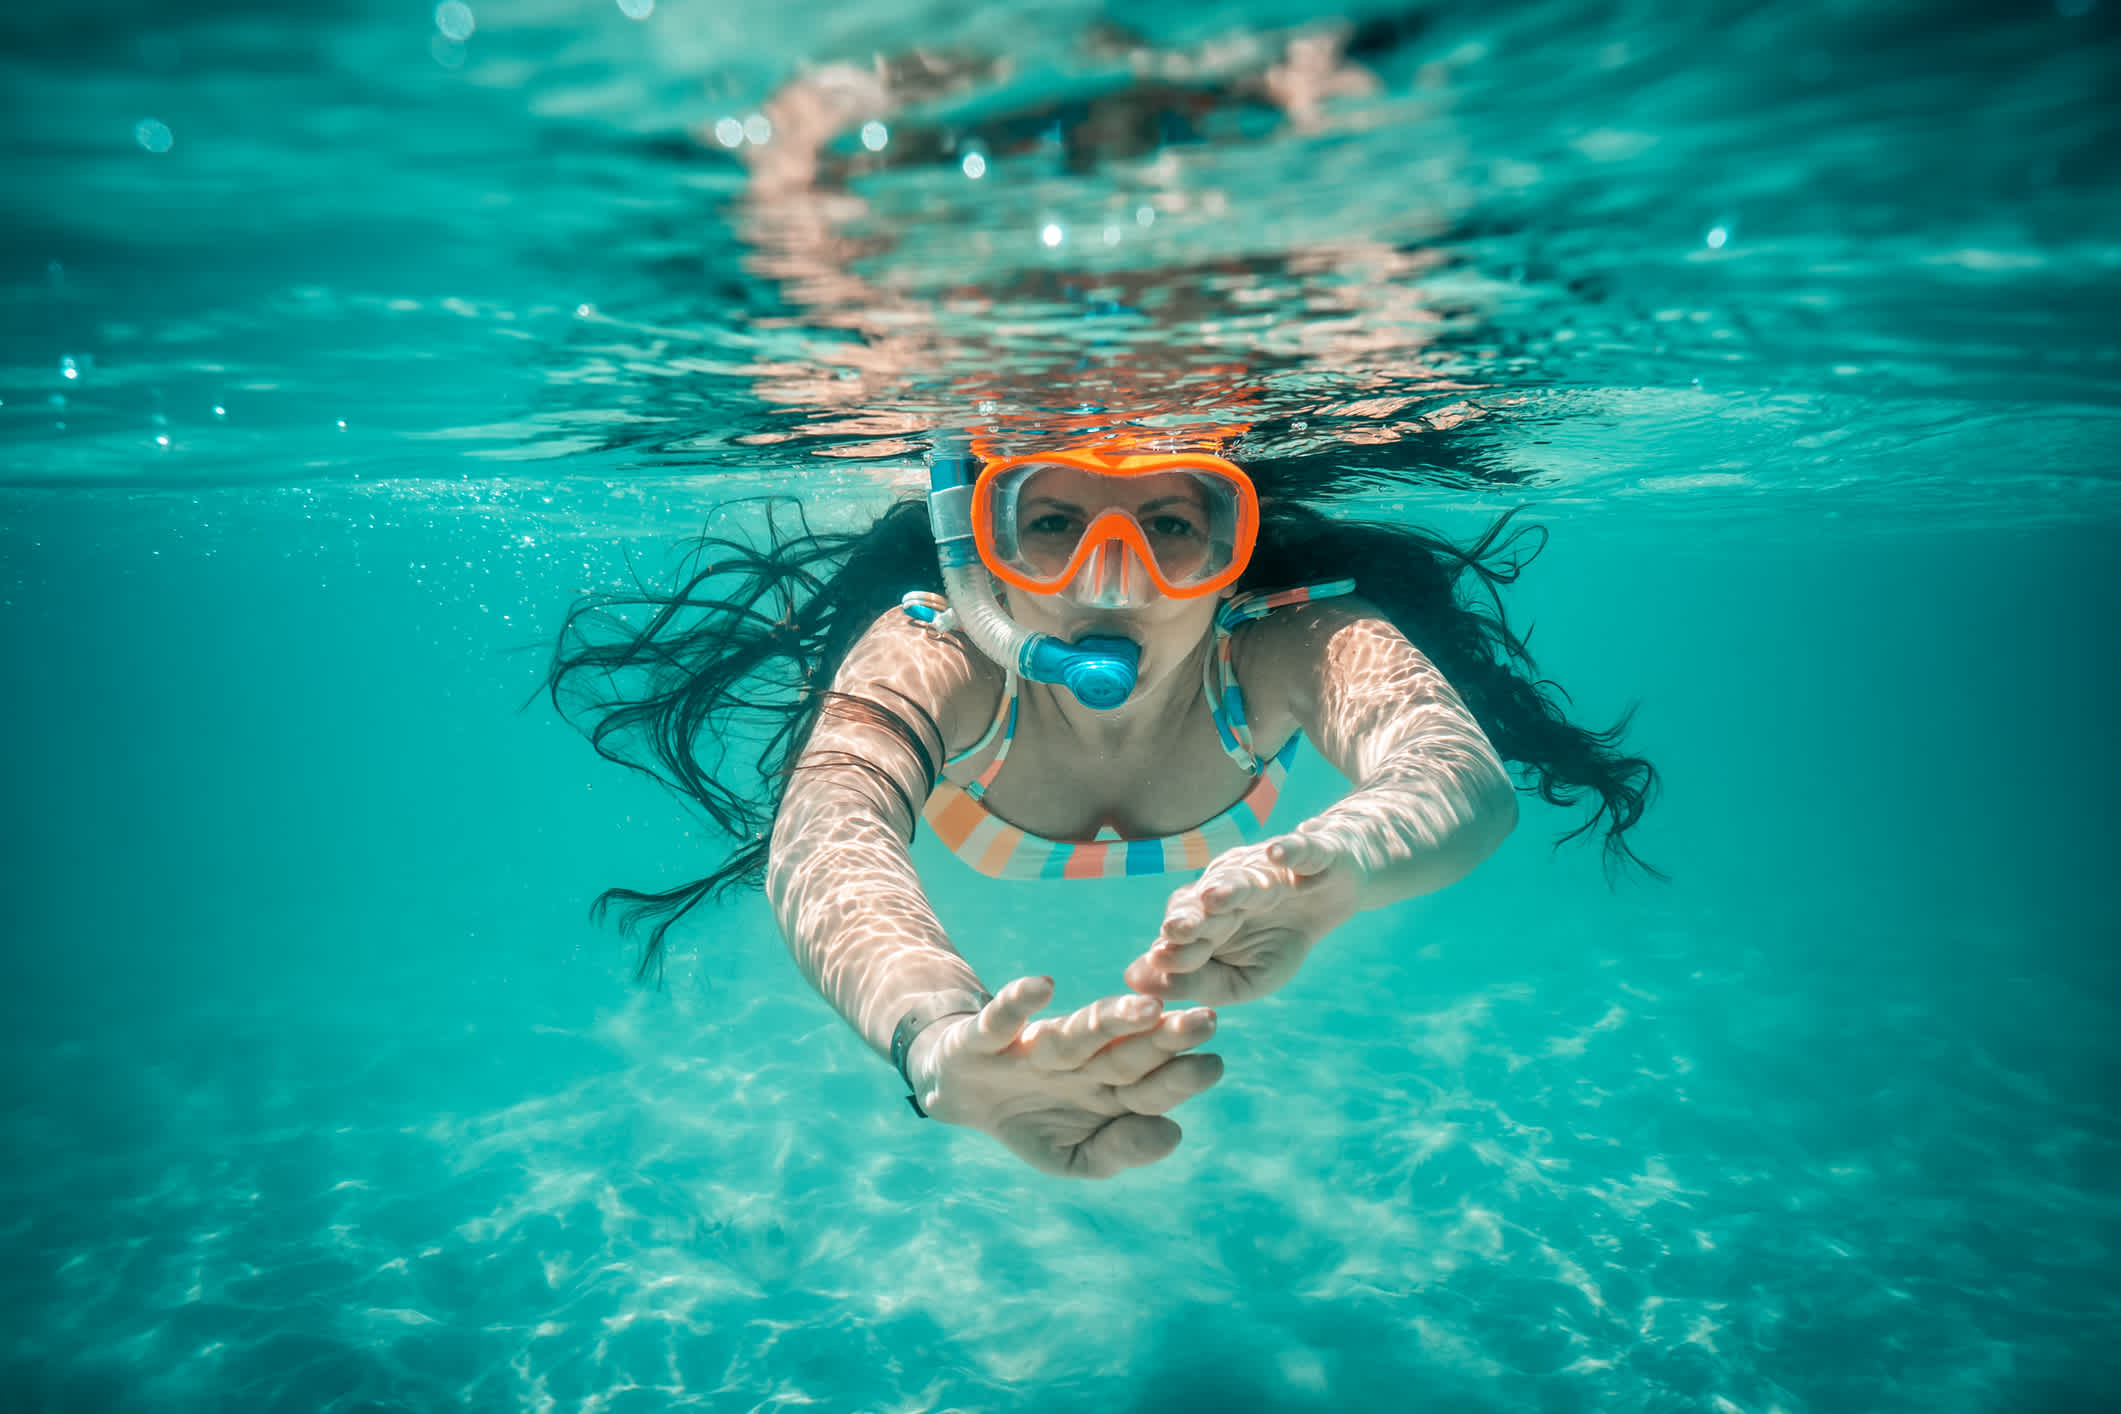 Vue sous-marine d'une femme nageant dans la mer

